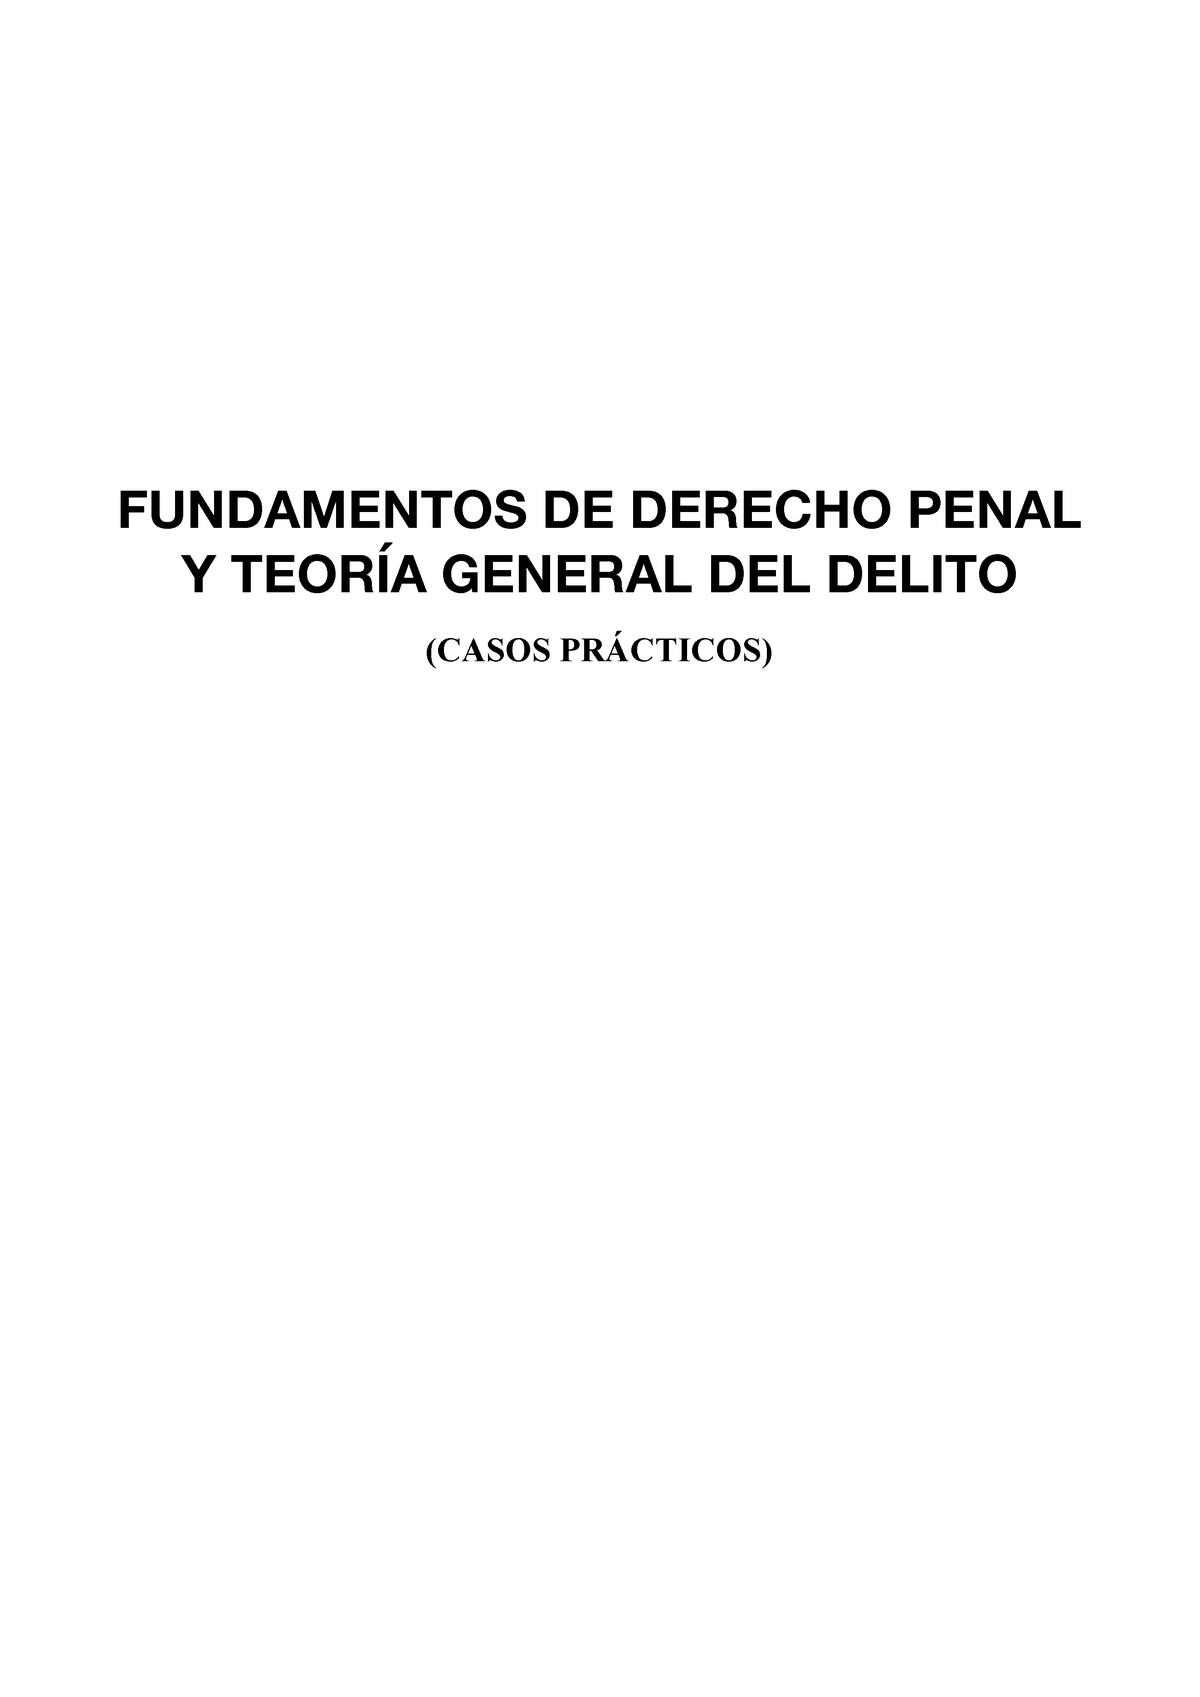 Apuntes Casos Prácticos Fundamentos De Derecho Penal Y TeorÍa General Del Delito Casos 9429